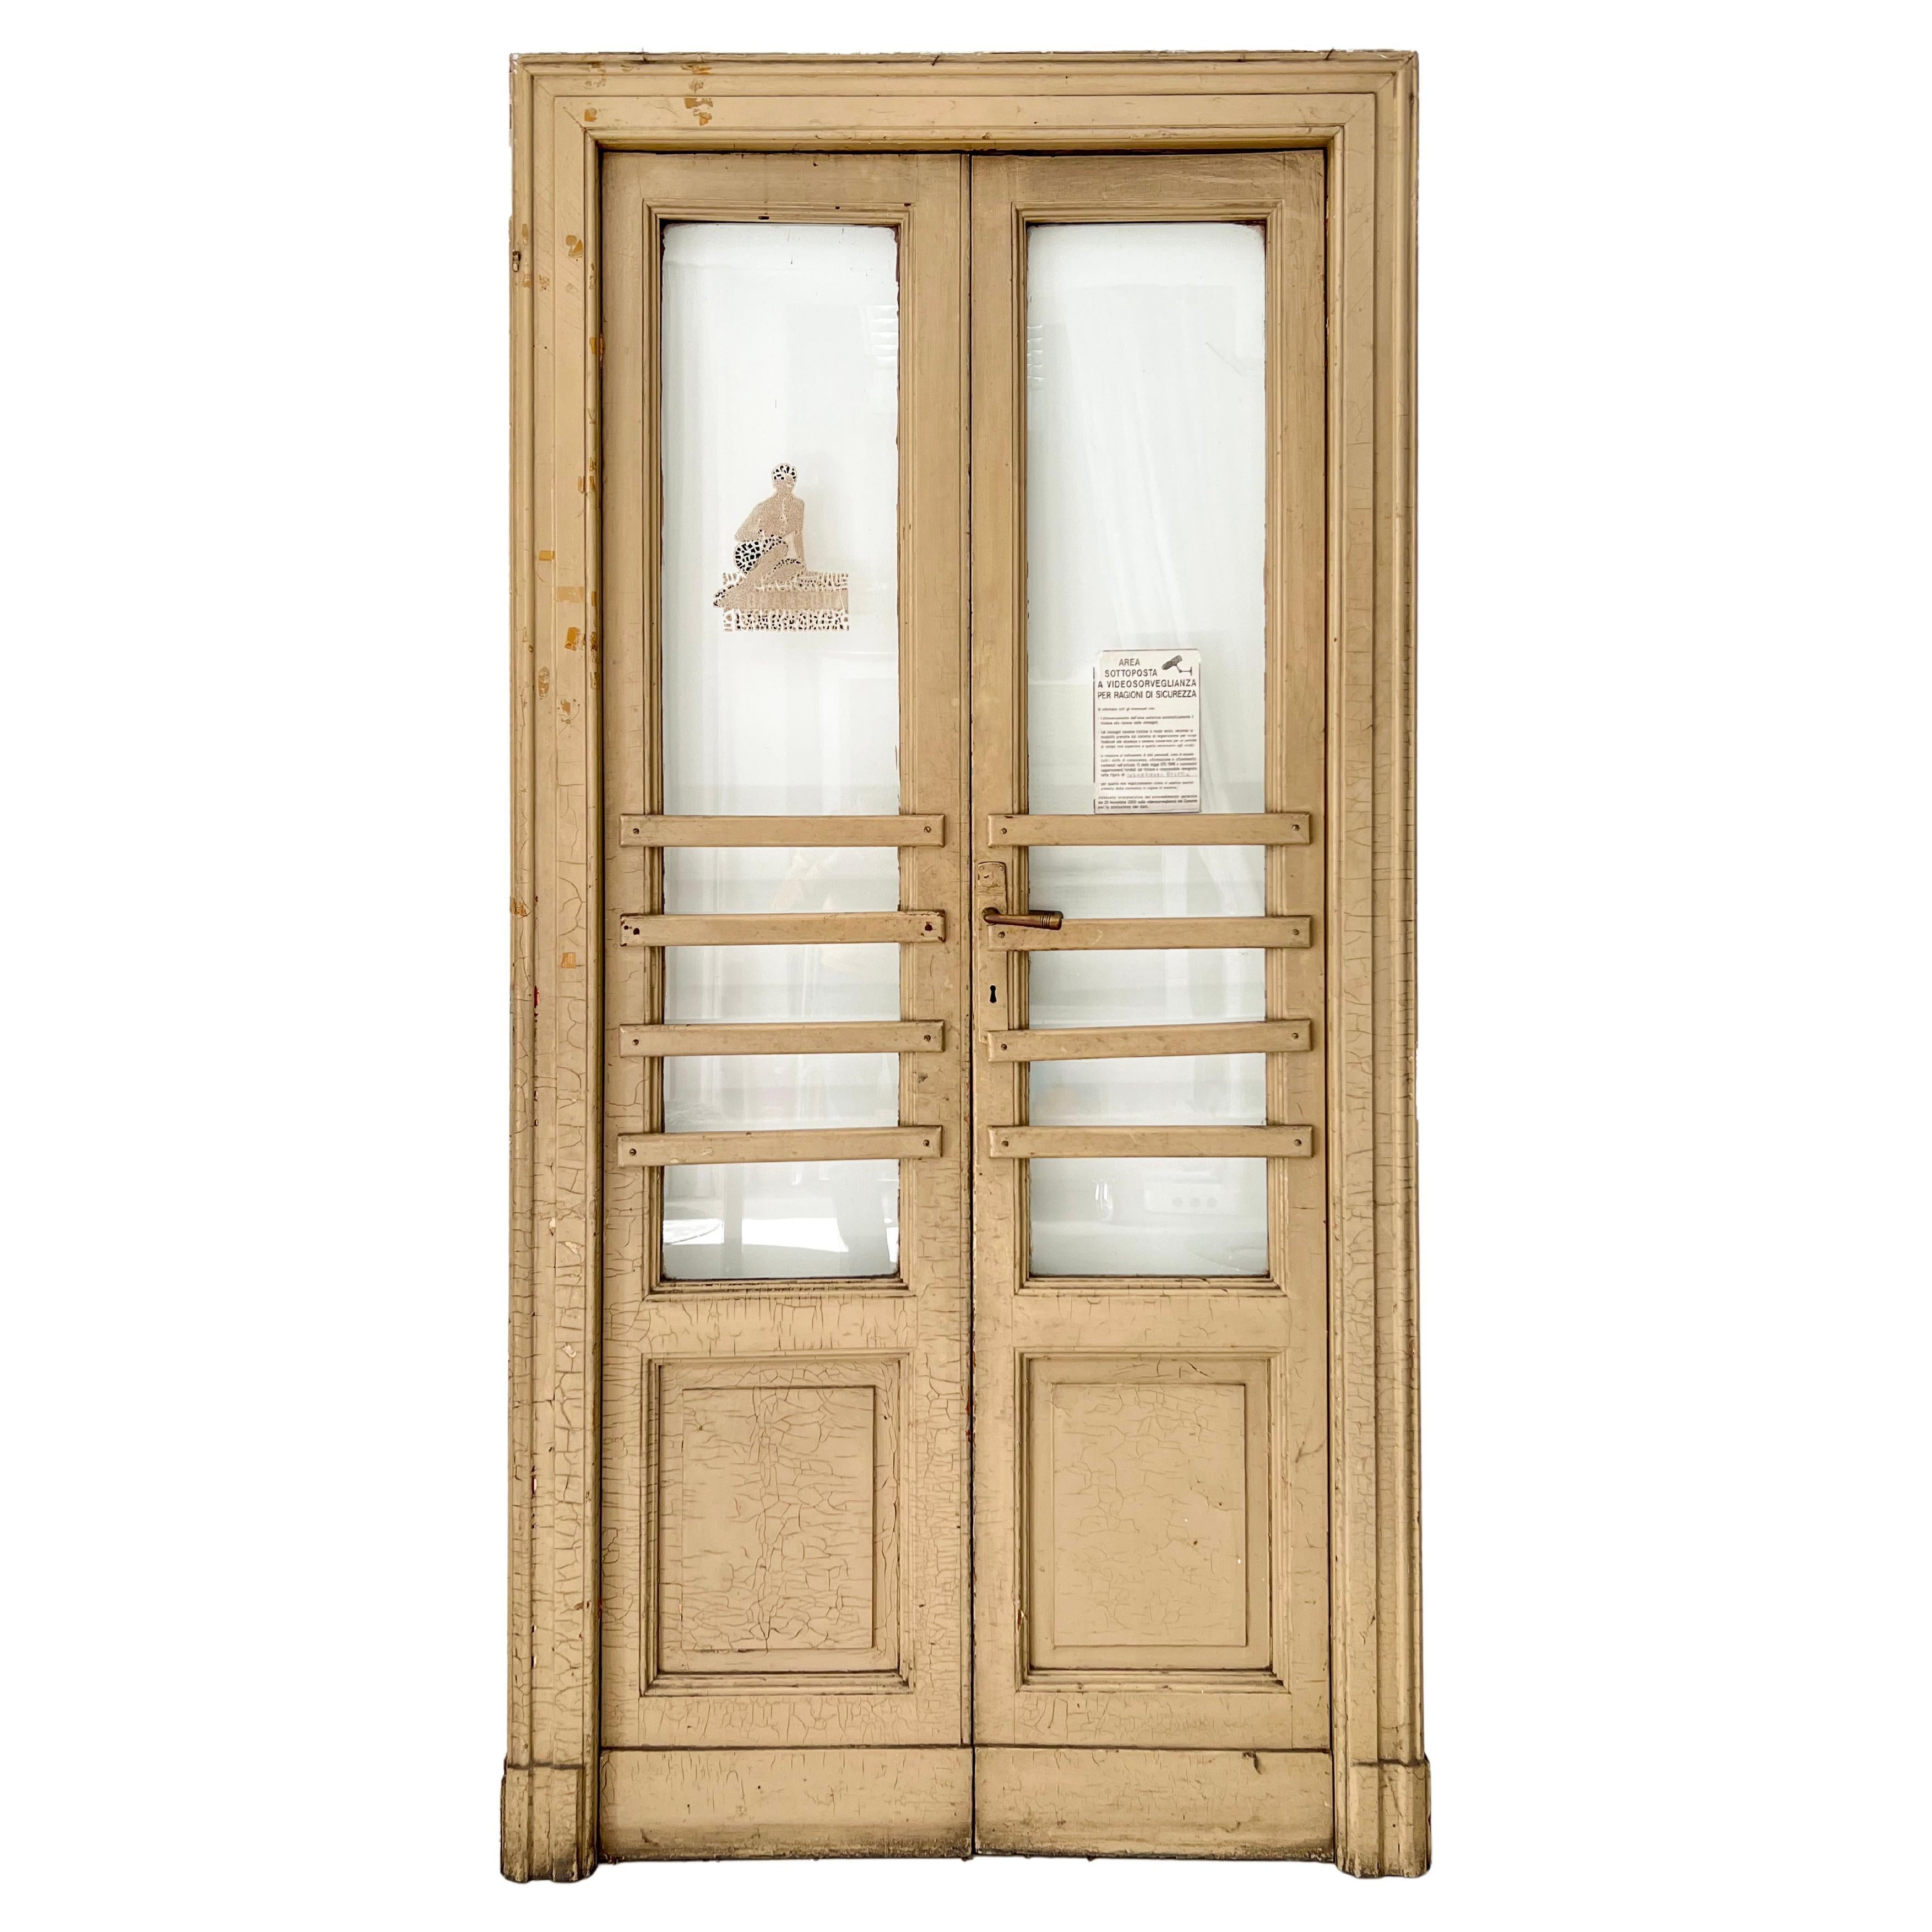 Vintage Door 1950s 'Italian Osteria' - Decorative Door - Artistic Door - Italian For Sale